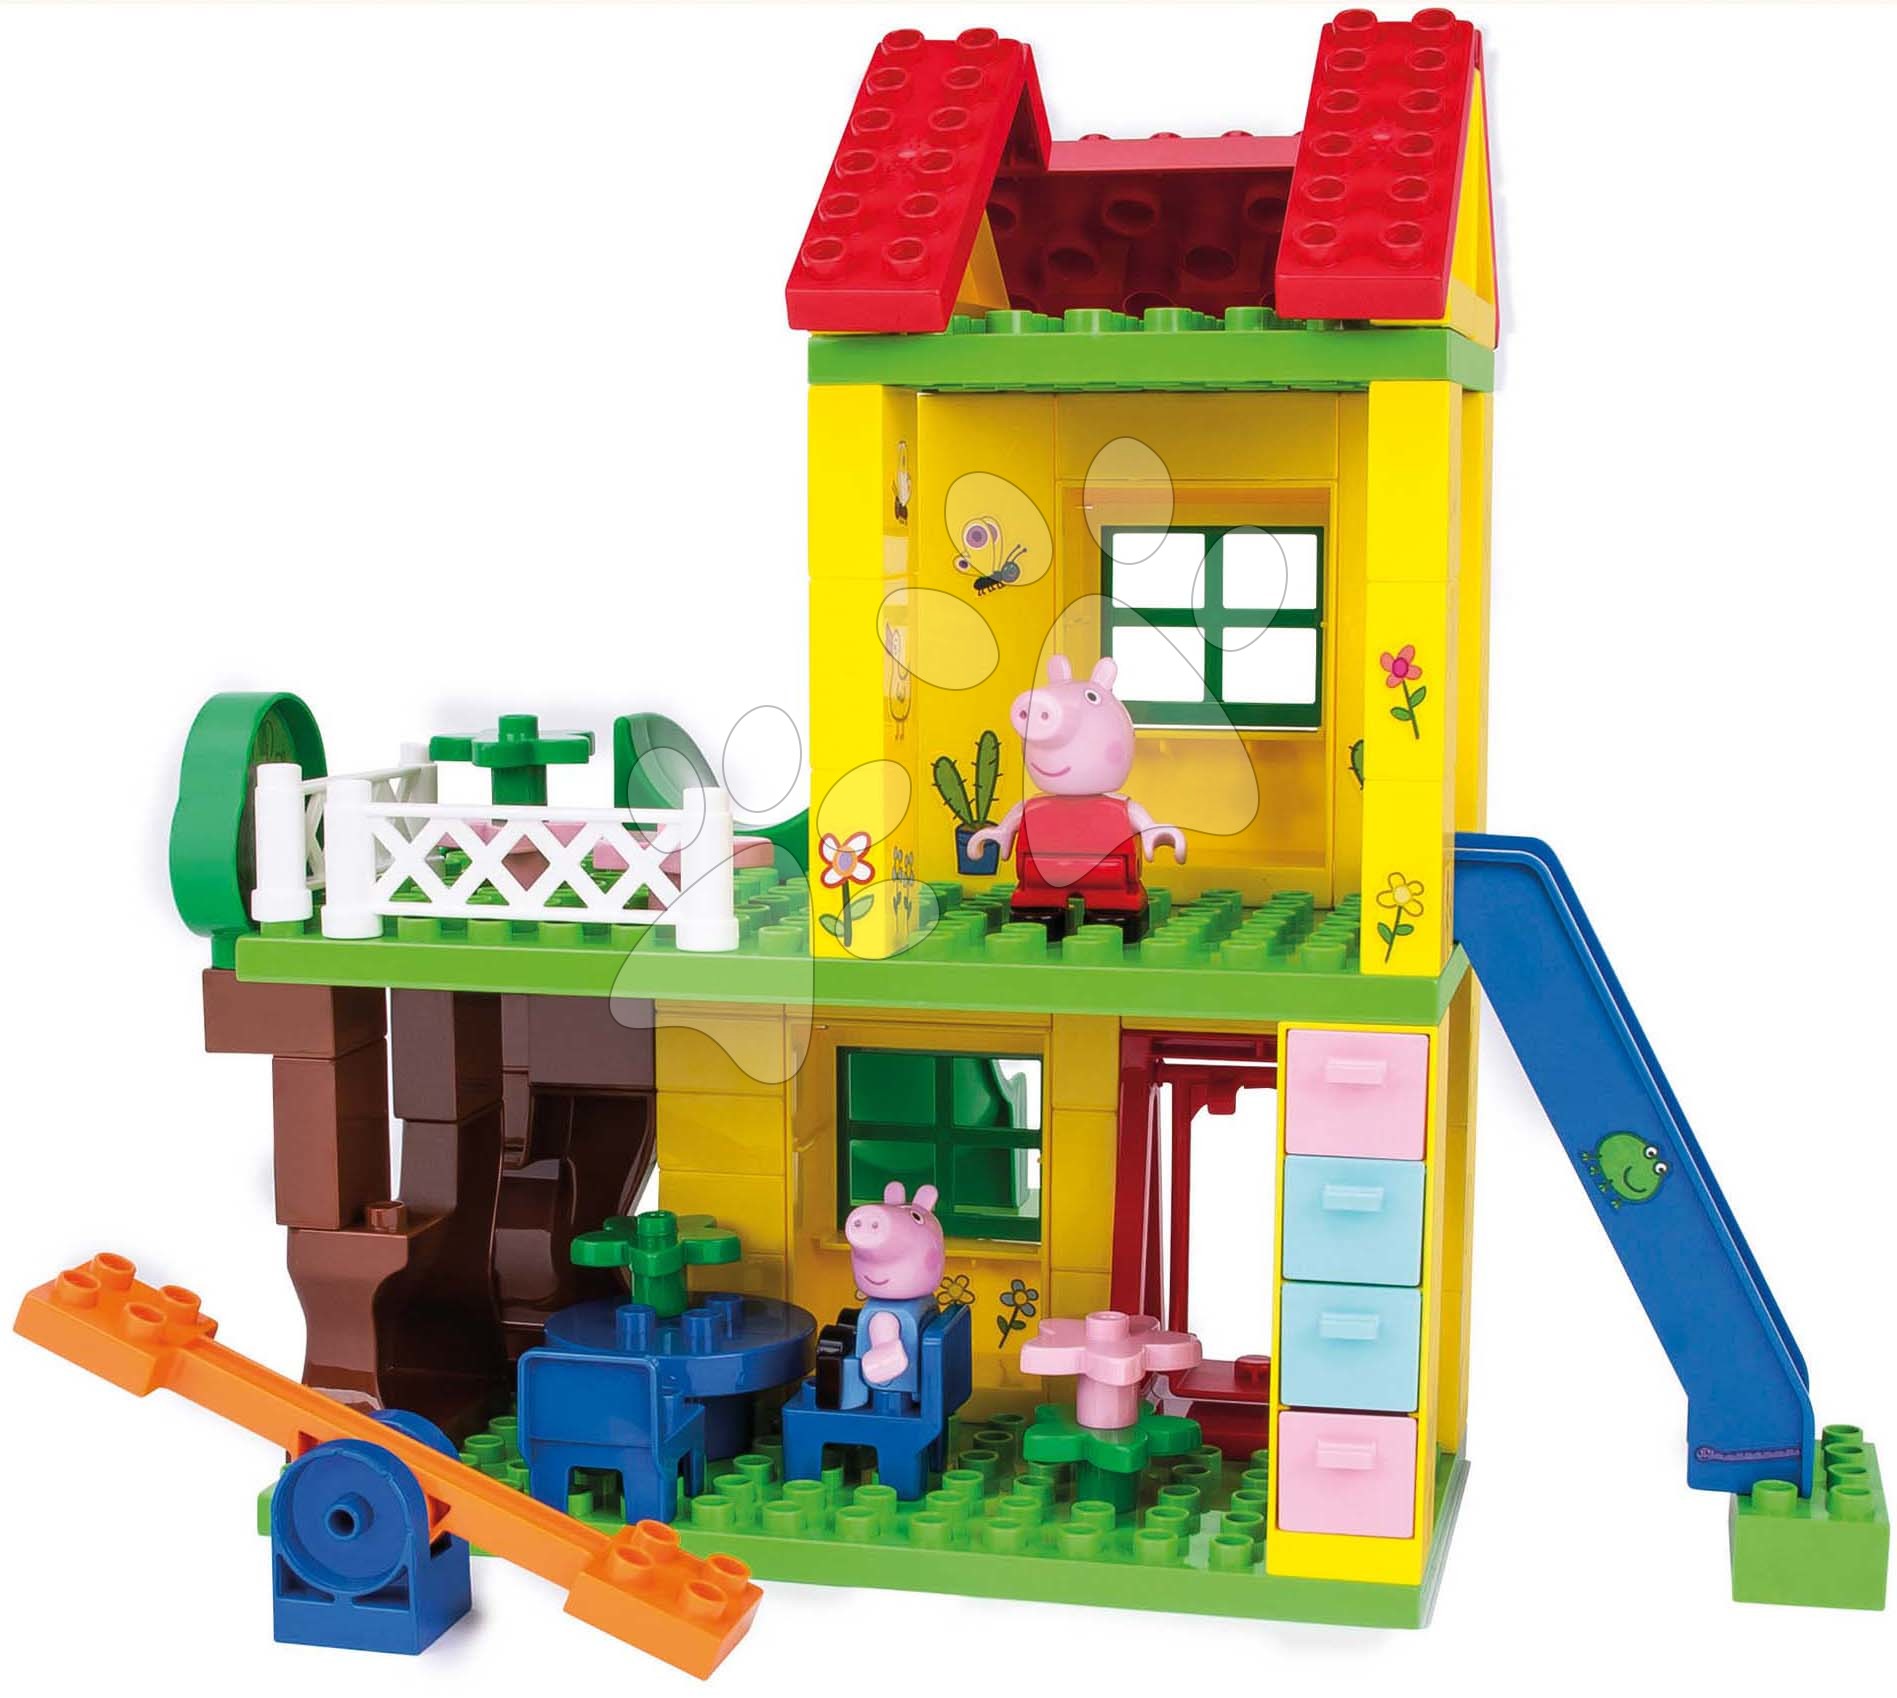 Stavebnice ako LEGO - Stavebnica Peppa Pig Play House PlayBig Bloxx BIG domček so šmykľavkou a hojdačkou 2 postavičky 72 dielov od 1,5-5 rokov